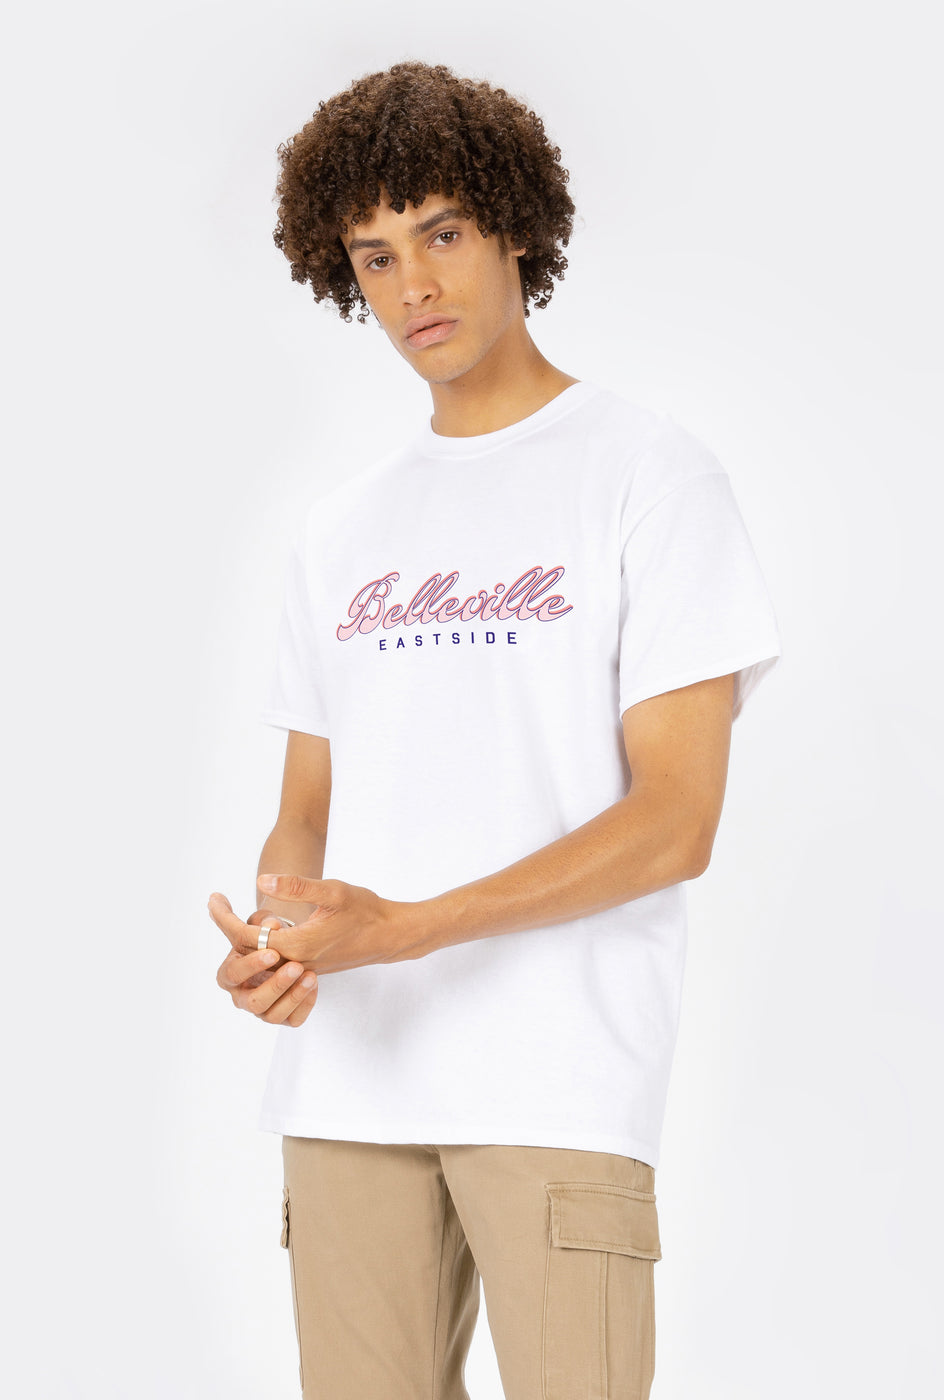 Rad. | T-Shirt S/S Belleville Eastside - Rad